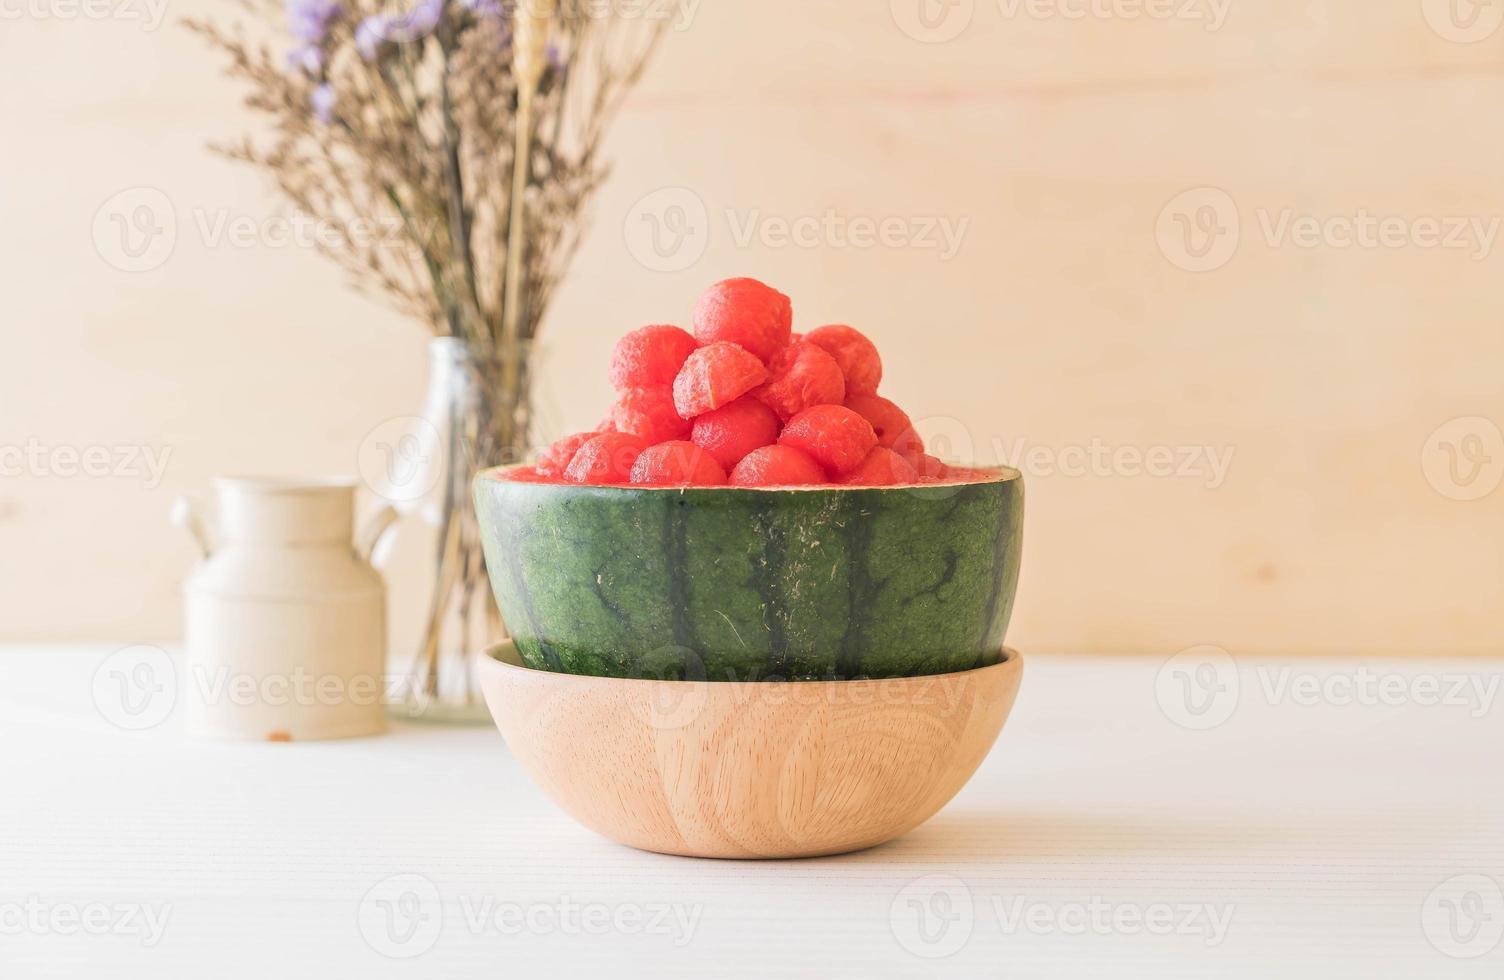 pastèque fraîche sur la table photo